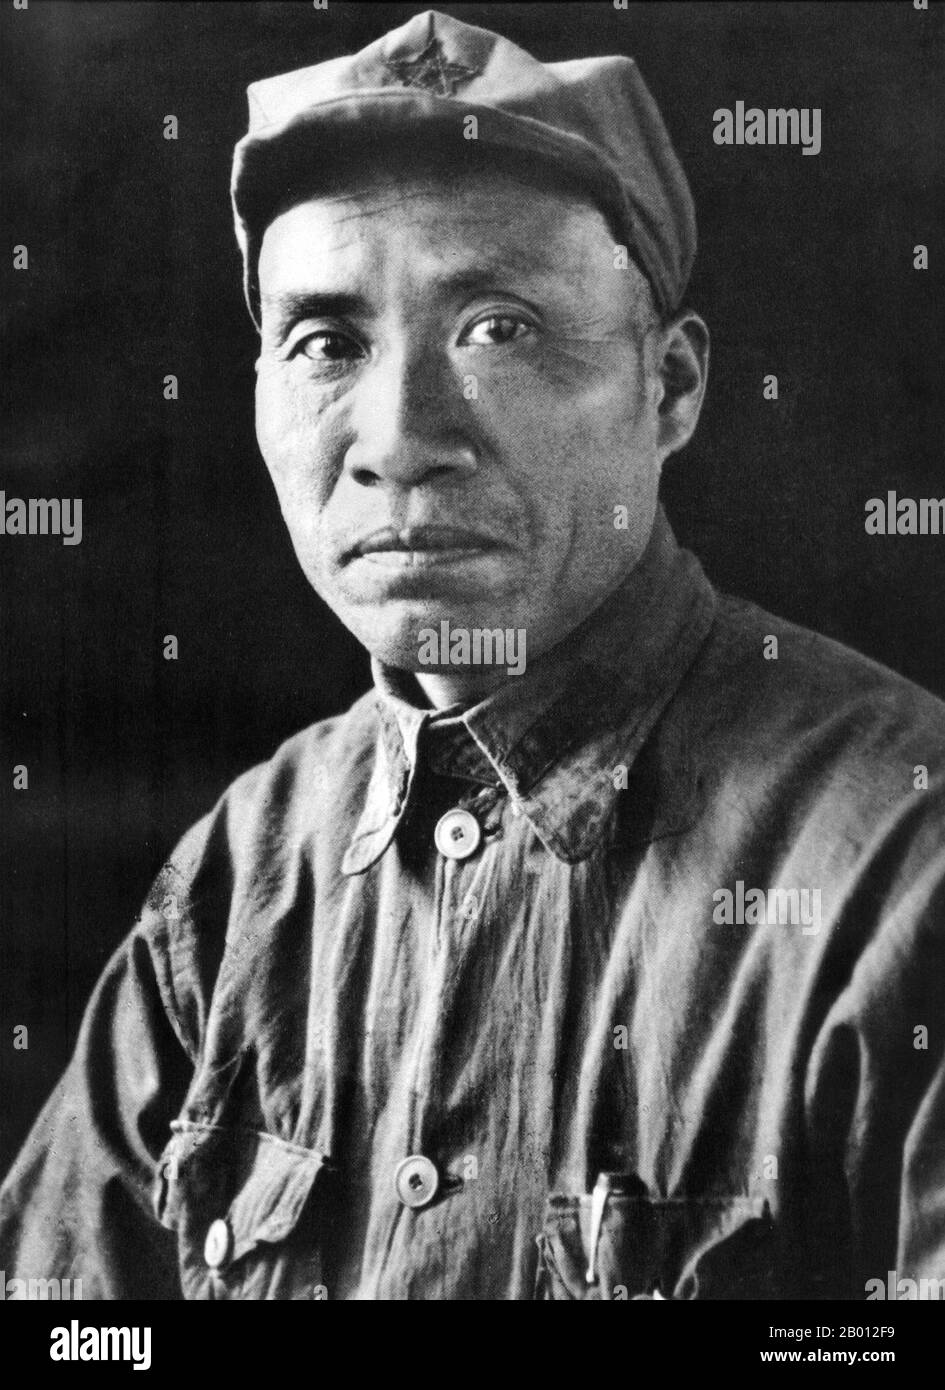 Cina: Zhu De (1 dicembre 1886 – 6 luglio 1976) è stato un generale e genio militare comunista cinese, del XX secolo. Zhu De era un leader militare e statista comunista cinese. È considerato il fondatore dell'Esercito Rosso Cinese (precursore dell'Esercito popolare di Liberazione) e il tattico che ha costruito la vittoria della Repubblica popolare Cinese durante la Guerra civile Cinese. Foto Stock